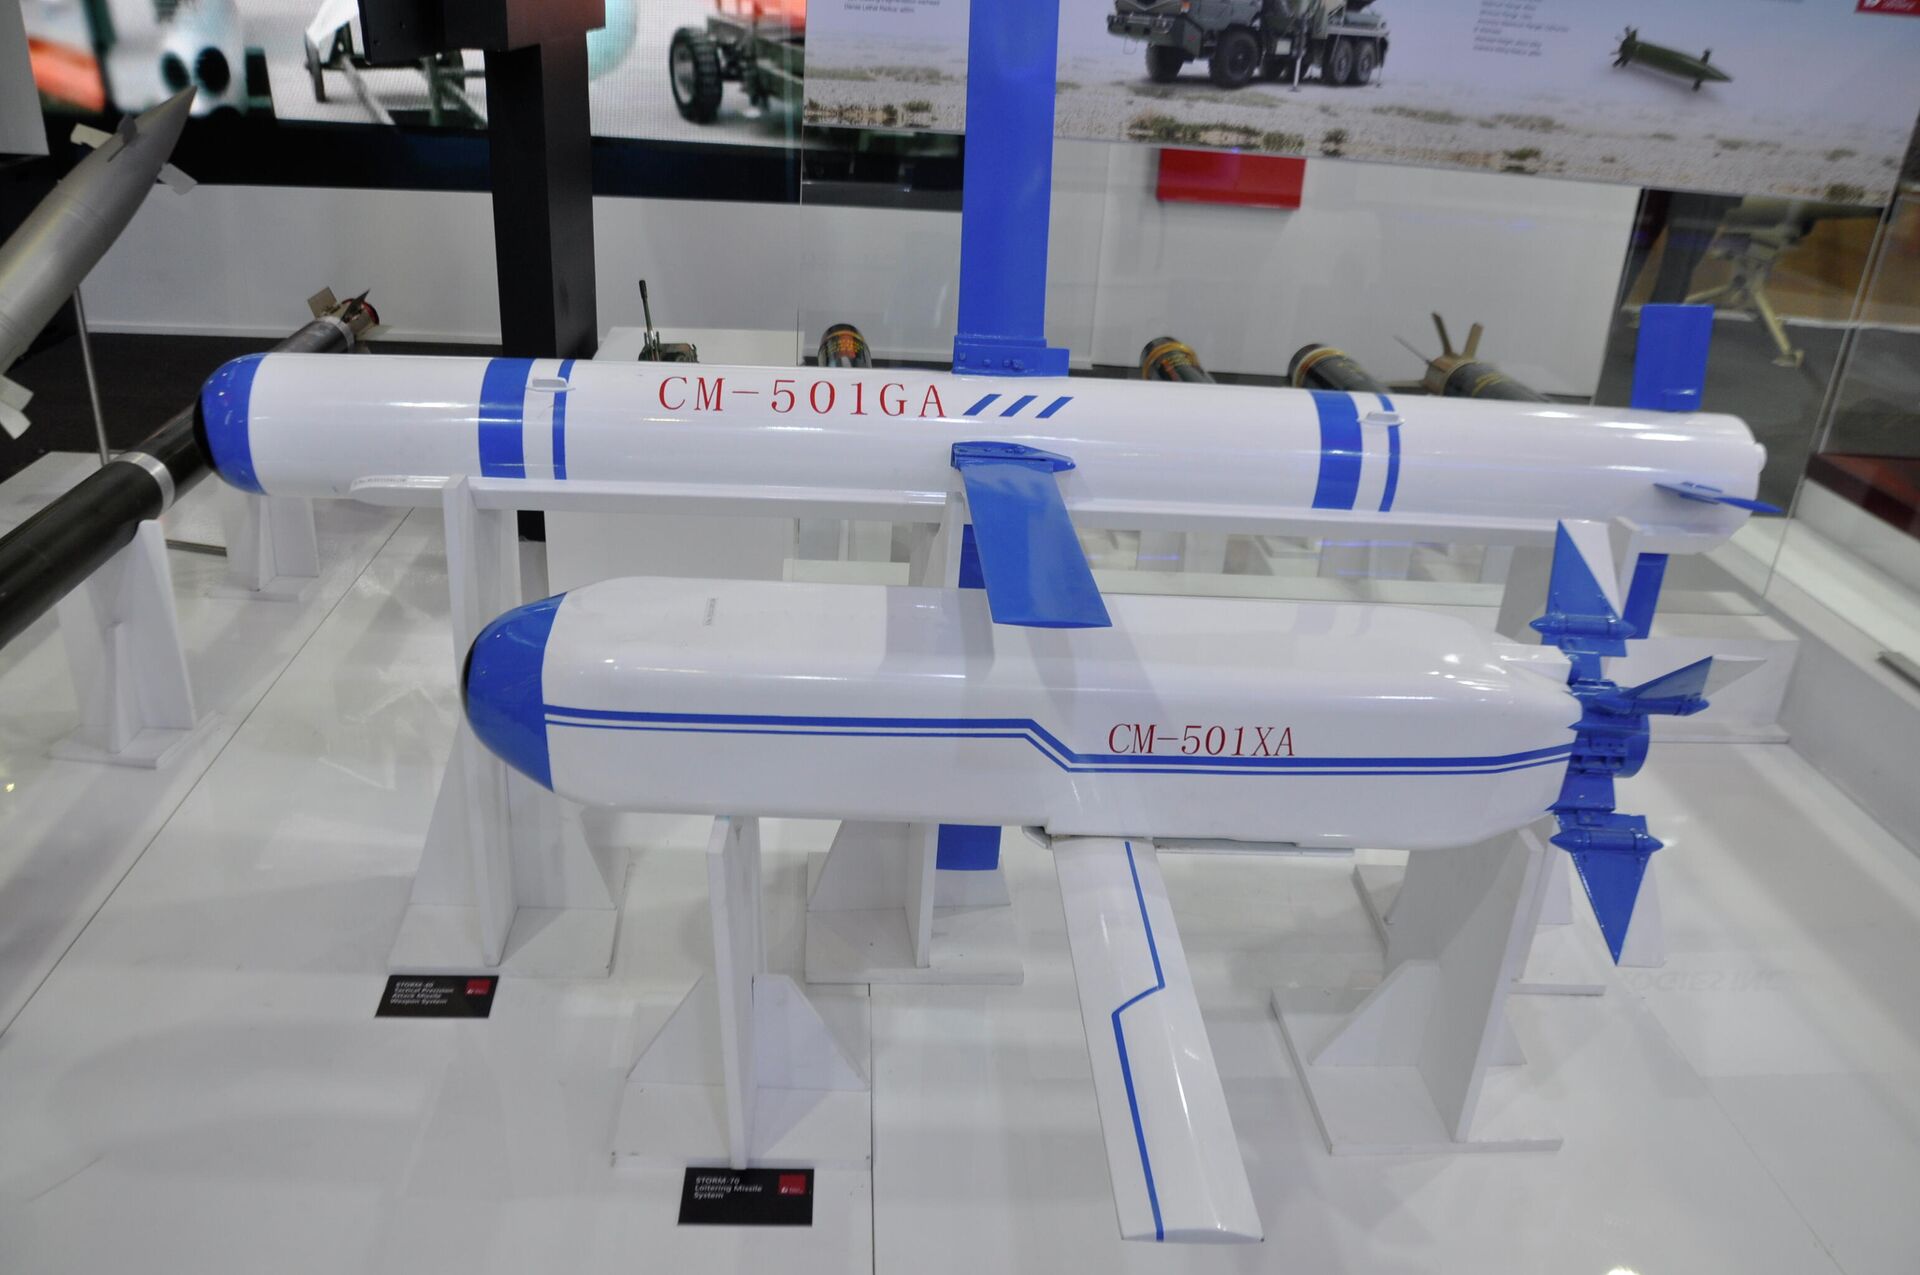 صواريخ سي إم - 501 الصينية الموجهة المضادة للدبابات خلال عرضها في إيديكس 2021 - سبوتنيك عربي, 1920, 07.12.2021